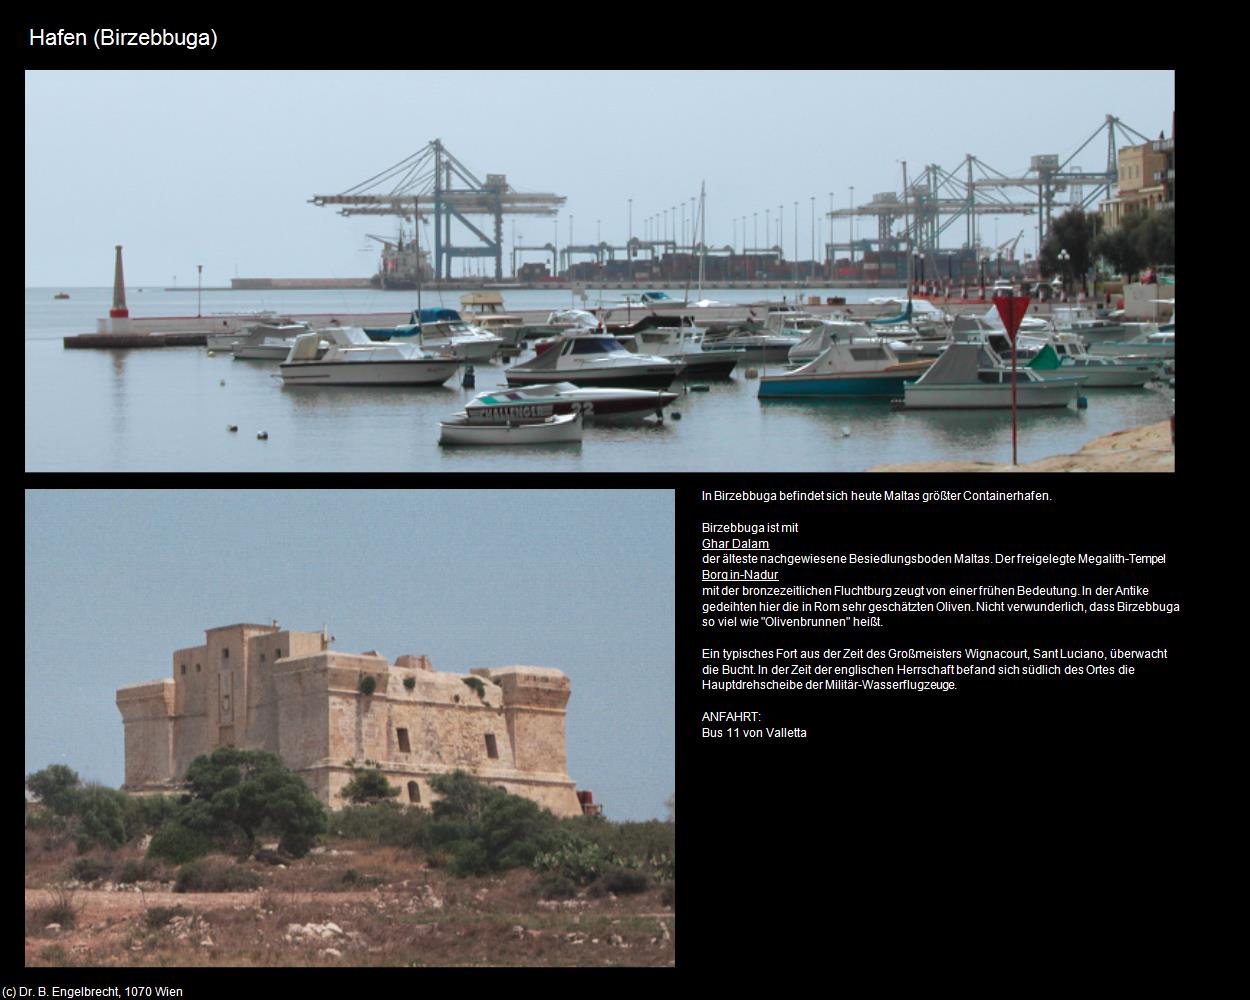 Hafen (Birzebbuga auf Malta) in Malta - Perle im Mittelmeer(c)B.Engelbrecht